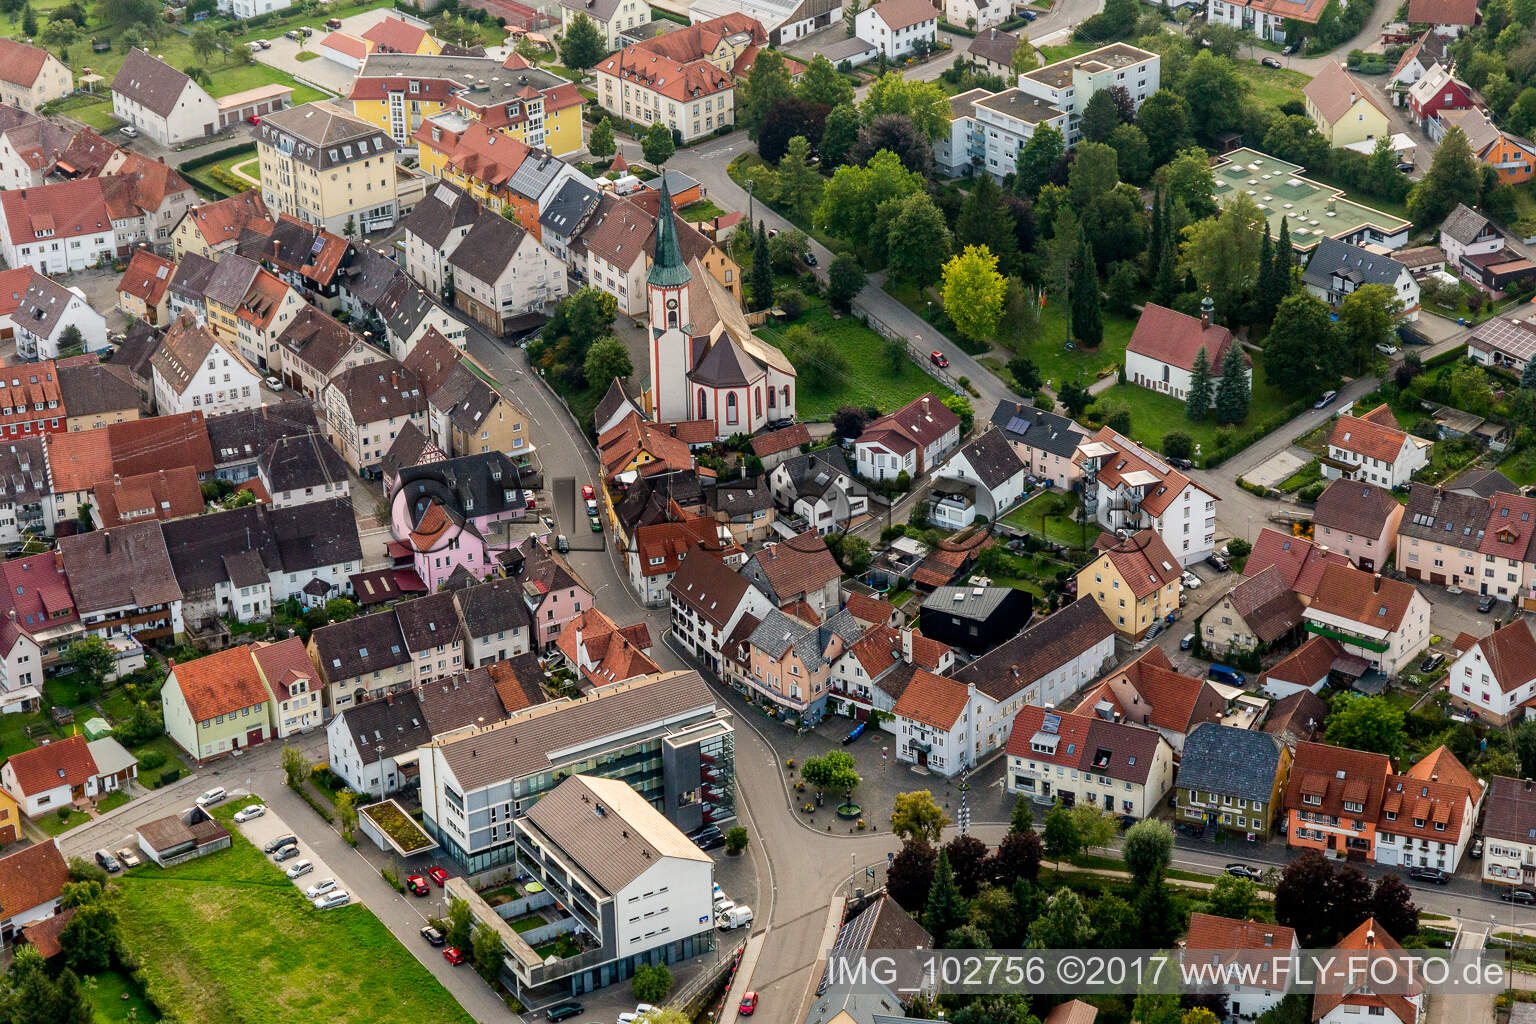 Vue aérienne de Bâtiment d'église au centre du village à Möhringen dans le département Bade-Wurtemberg, Allemagne